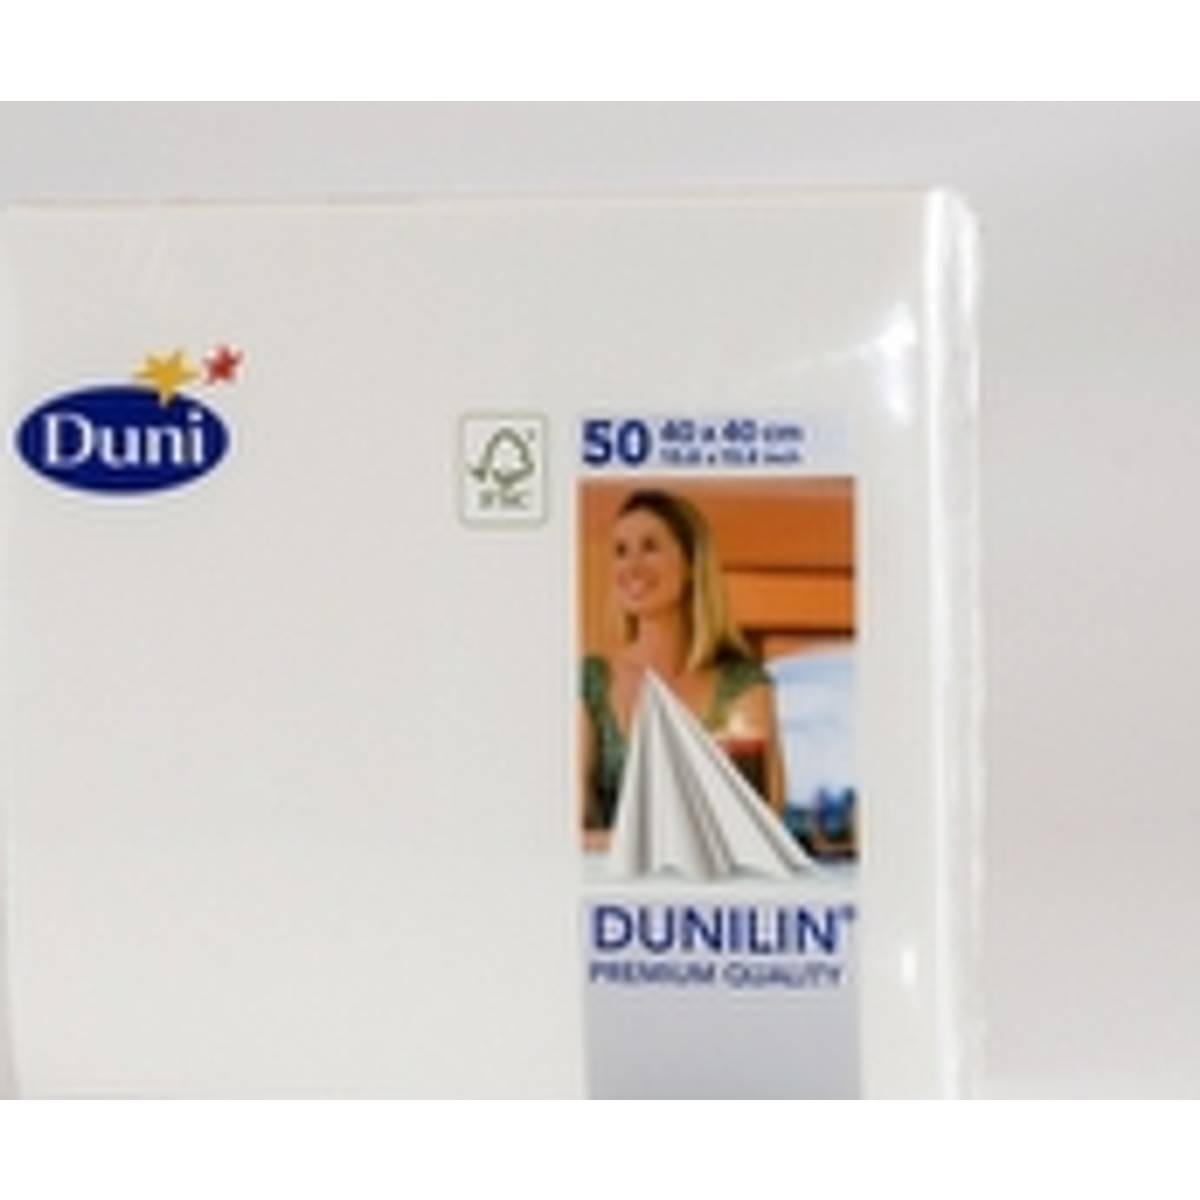 Dunilin servietter • Find den billigste pris hos PriceRunner nu »